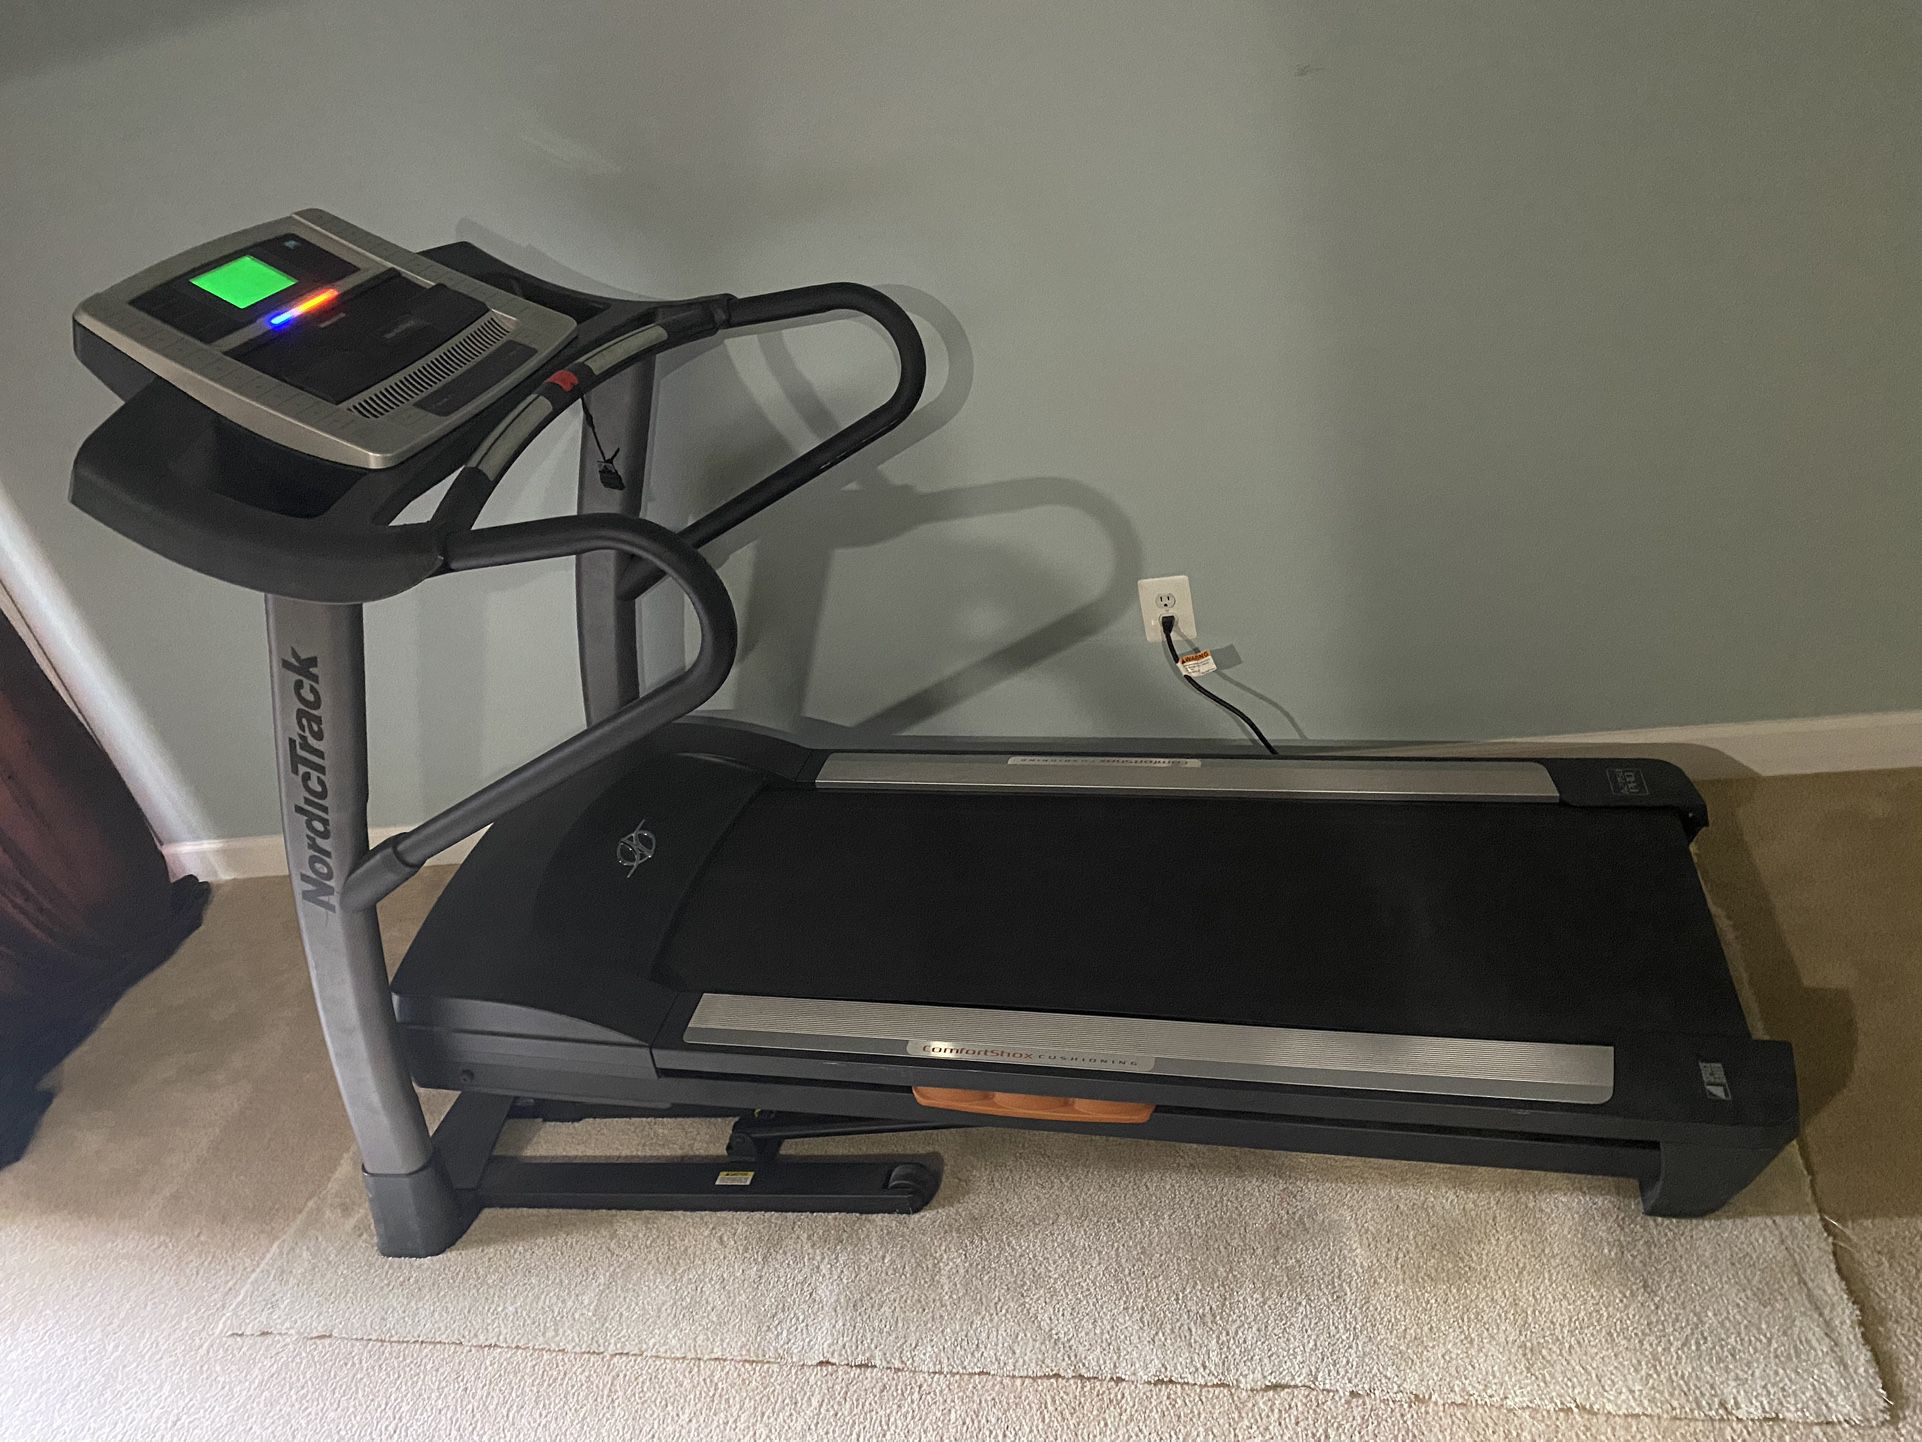 NordicTrack A2750 Pro Treadmill $400 OBO